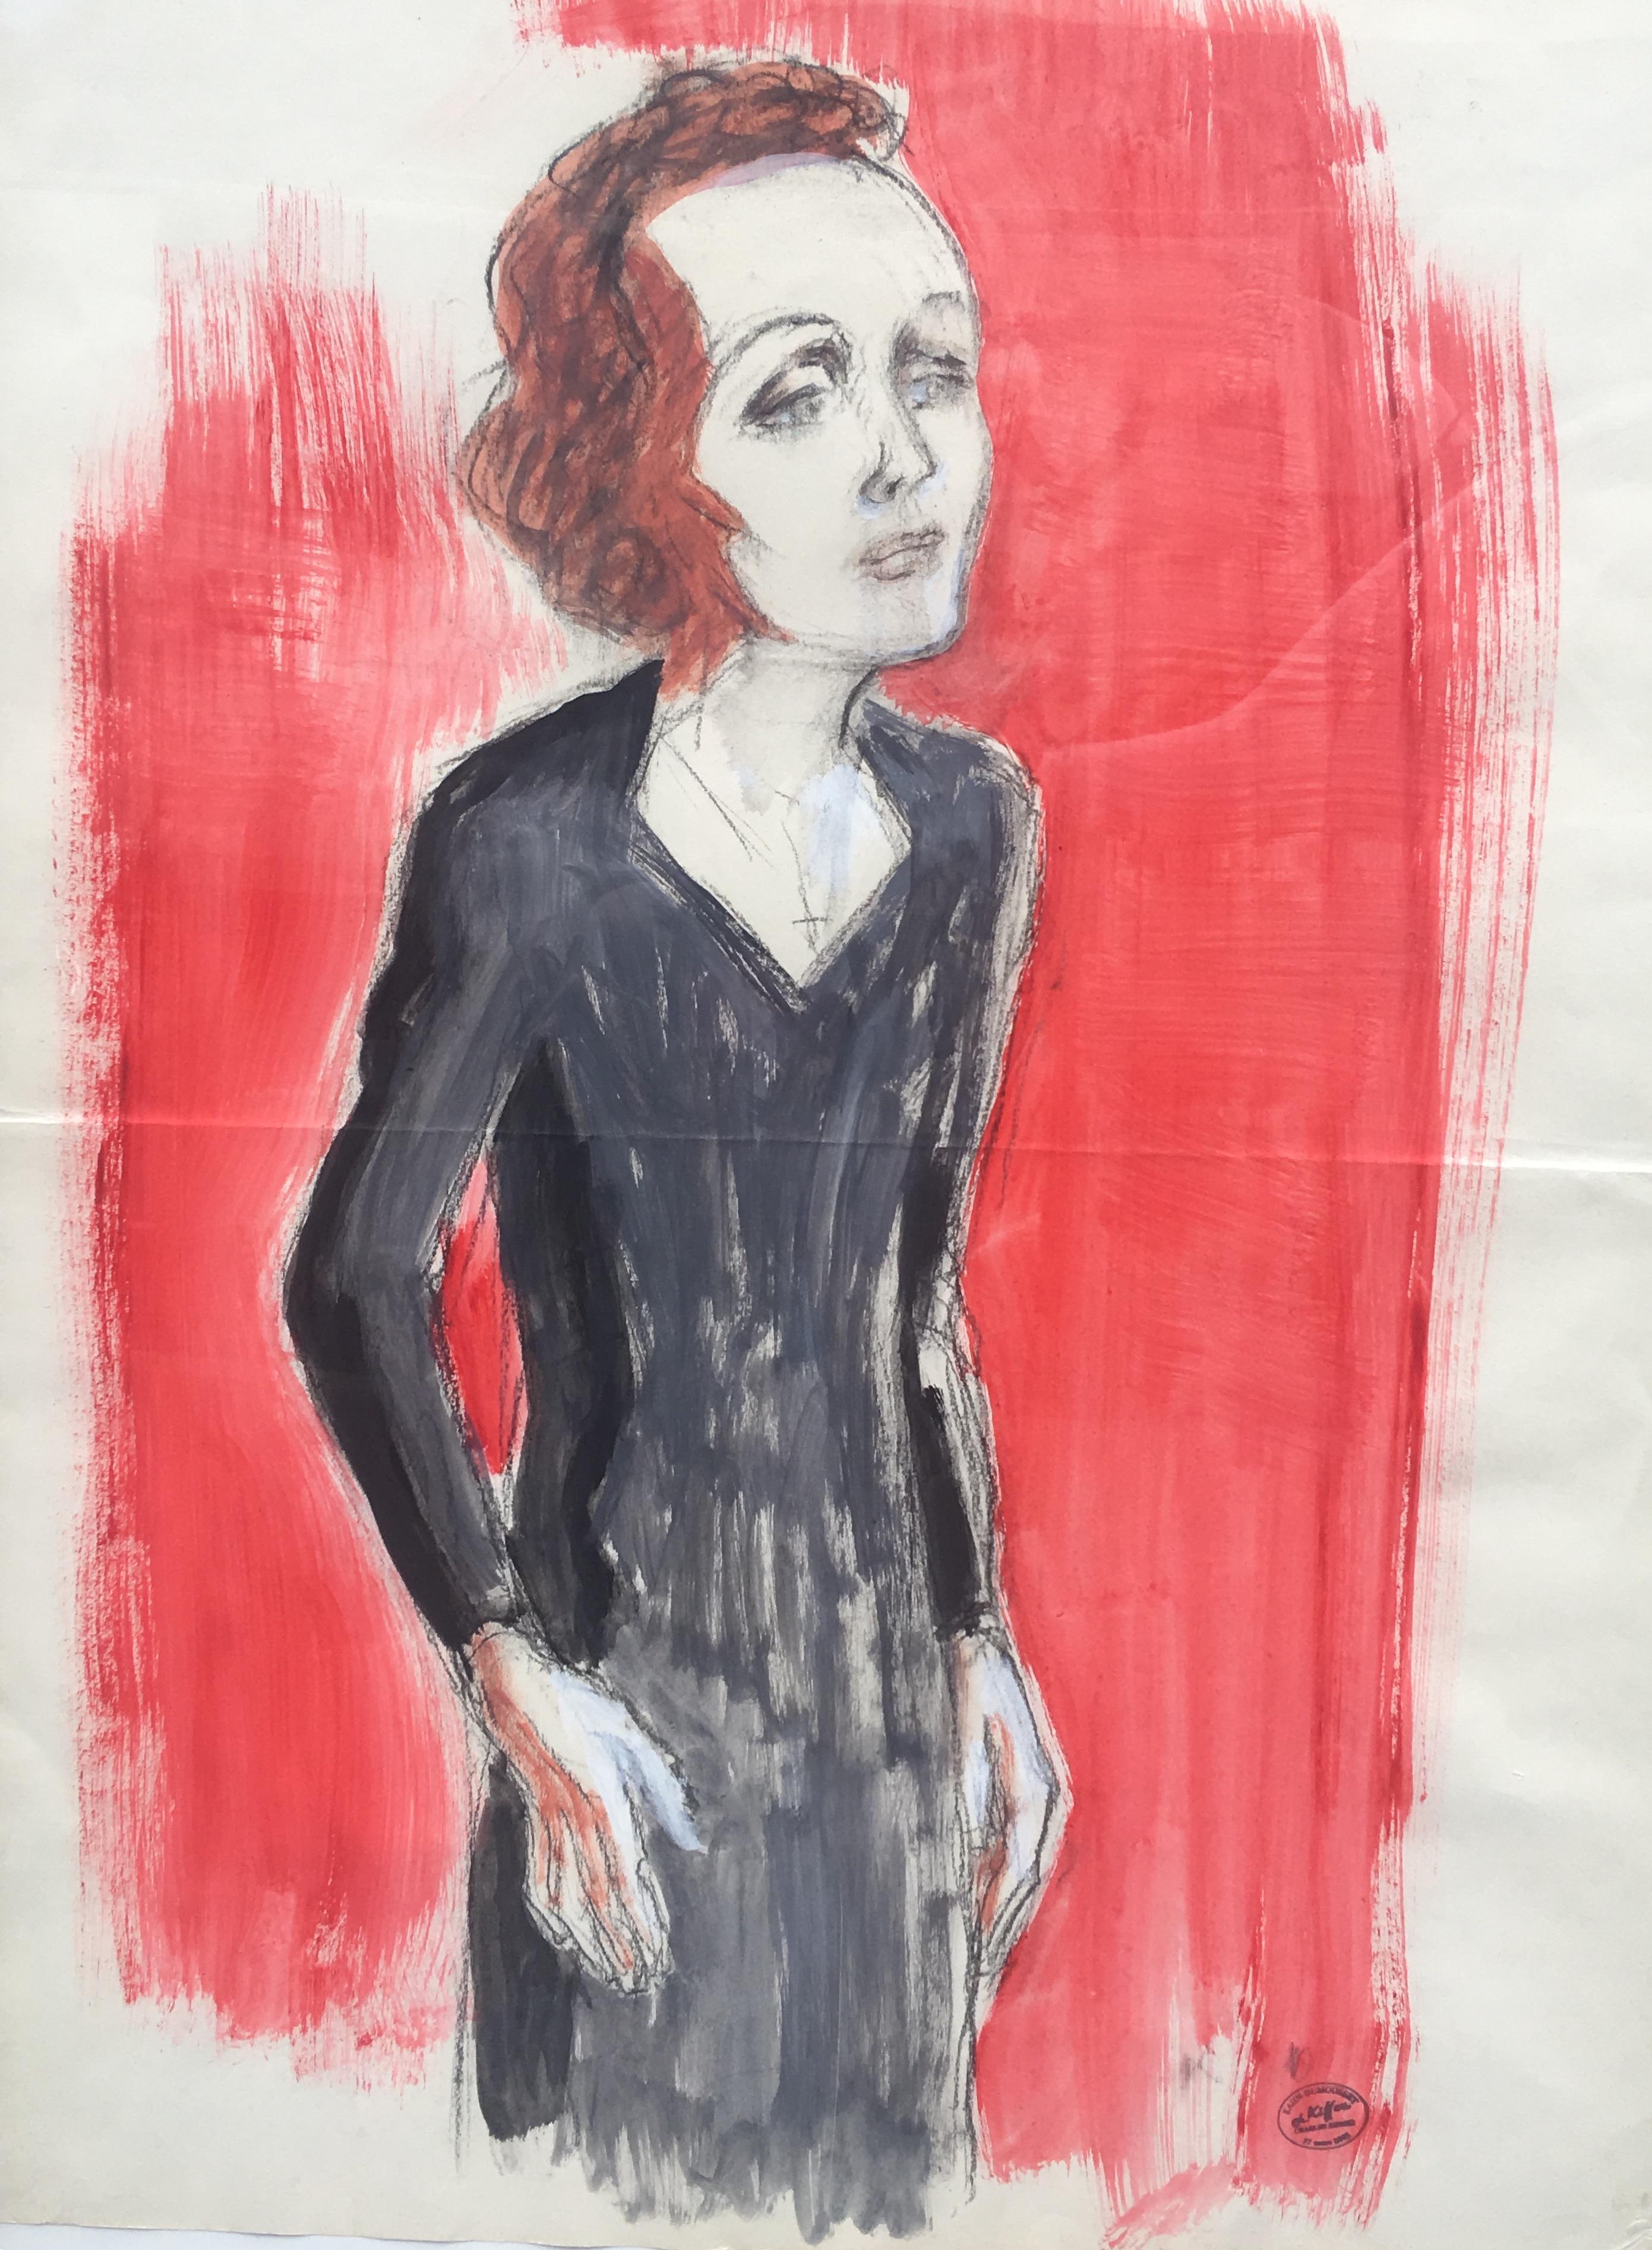 Édith Piaf sur scène aquarelle et crayon sur papier, monogrammé K pour Charles Kiffer (1902-1992), cachet de l'atelier.

Charles Kiffer est connu pour ses figurines, peintures, gravures, affiches, presque toutes consacrées au théâtre, au music-hall